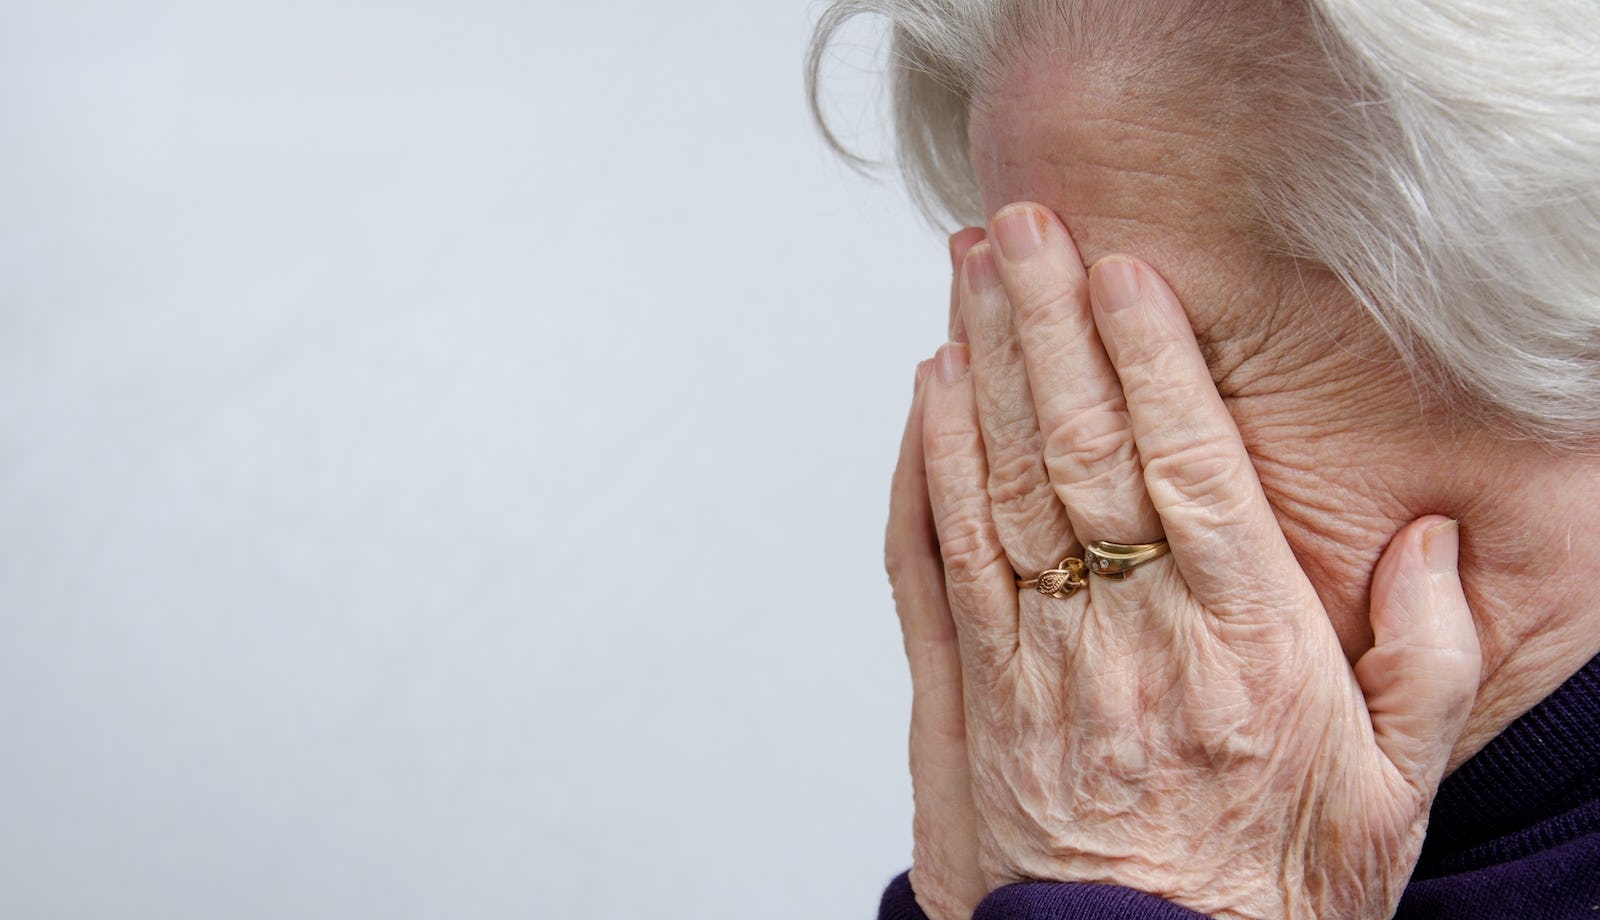 Bejaarde vrouw grijpt naast overwaarde, maar houdt hypotheek: eigen schuld